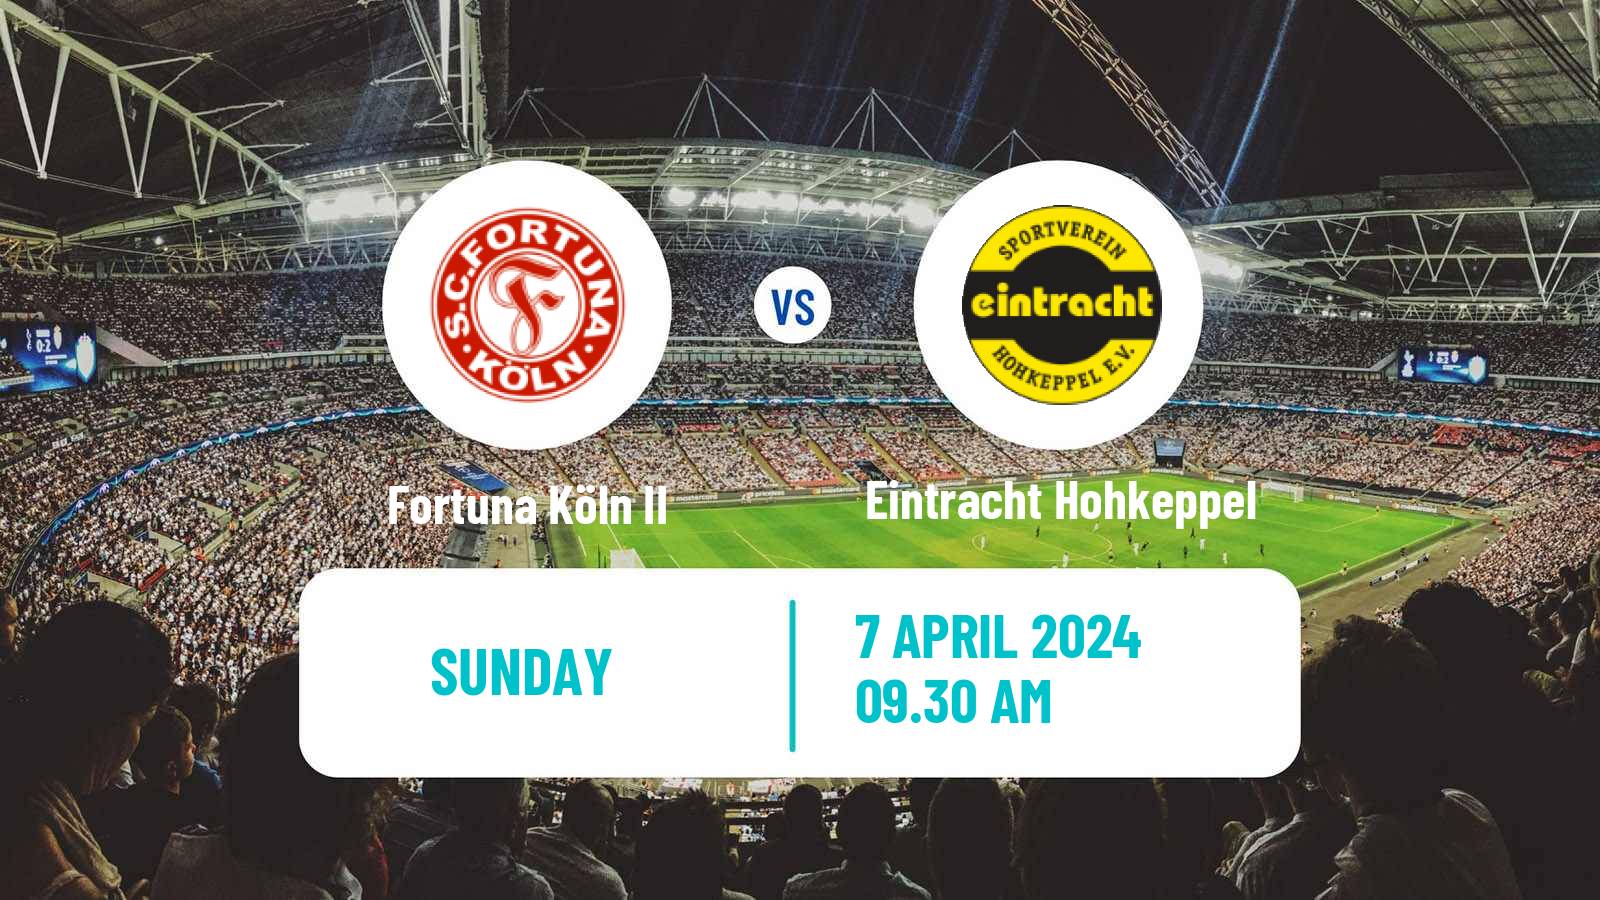 Soccer German Oberliga Mittelrhein Fortuna Köln II - Eintracht Hohkeppel